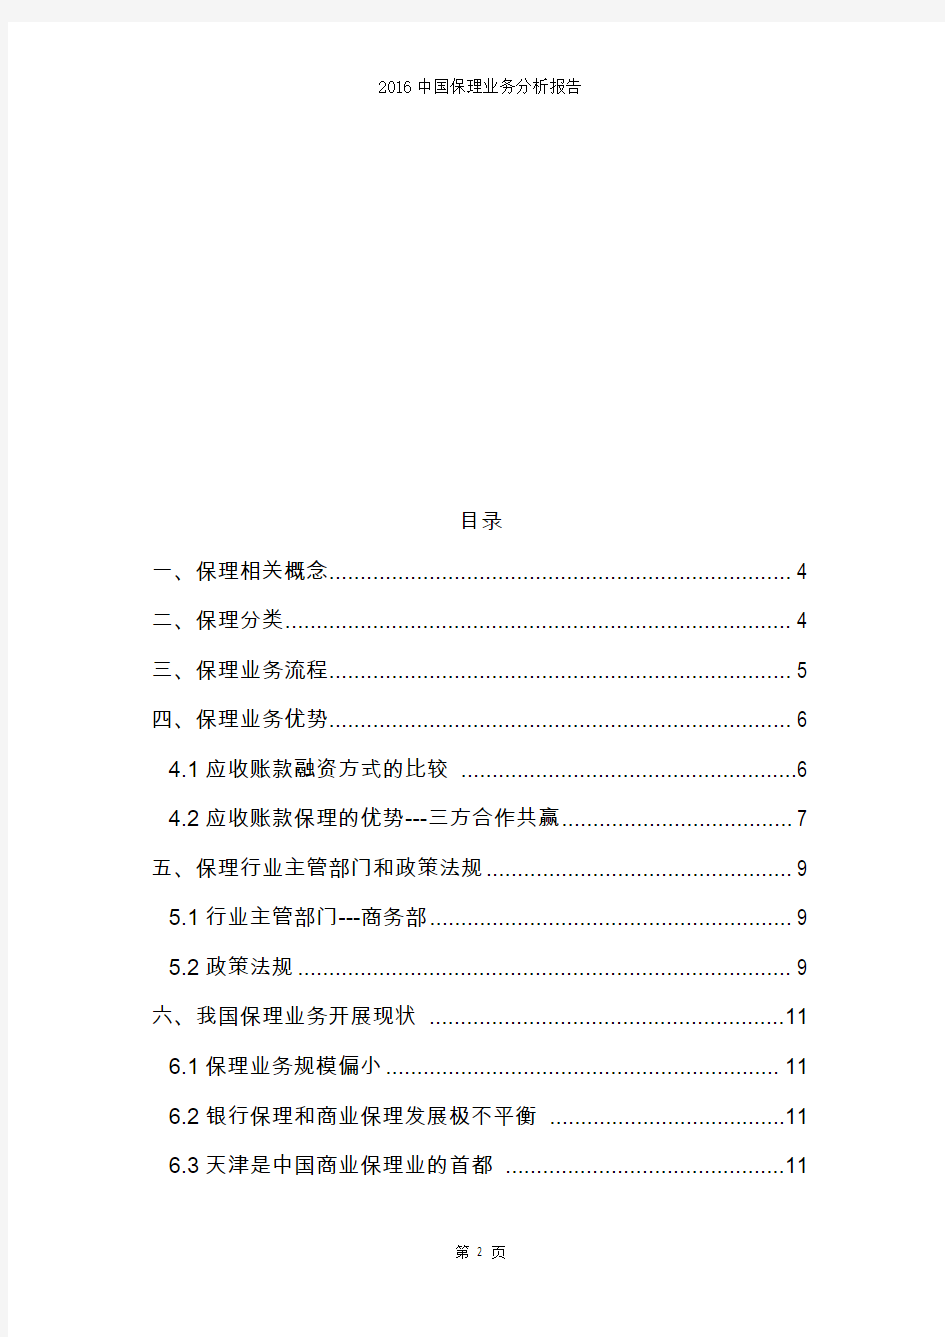 2016中国保理业务分析报告